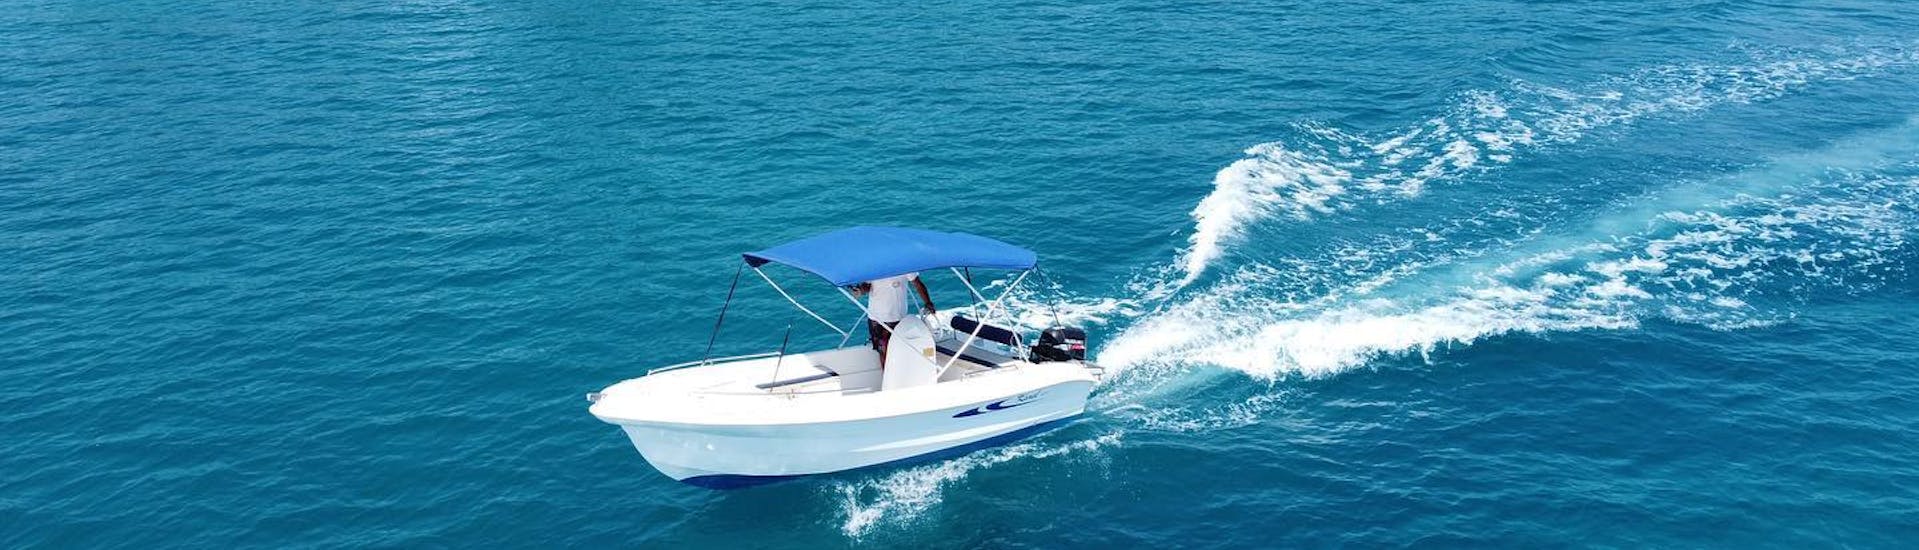 Bootsverleih in Agios Nikolaos (bis zu 5 Personen) ohne Führerschein.